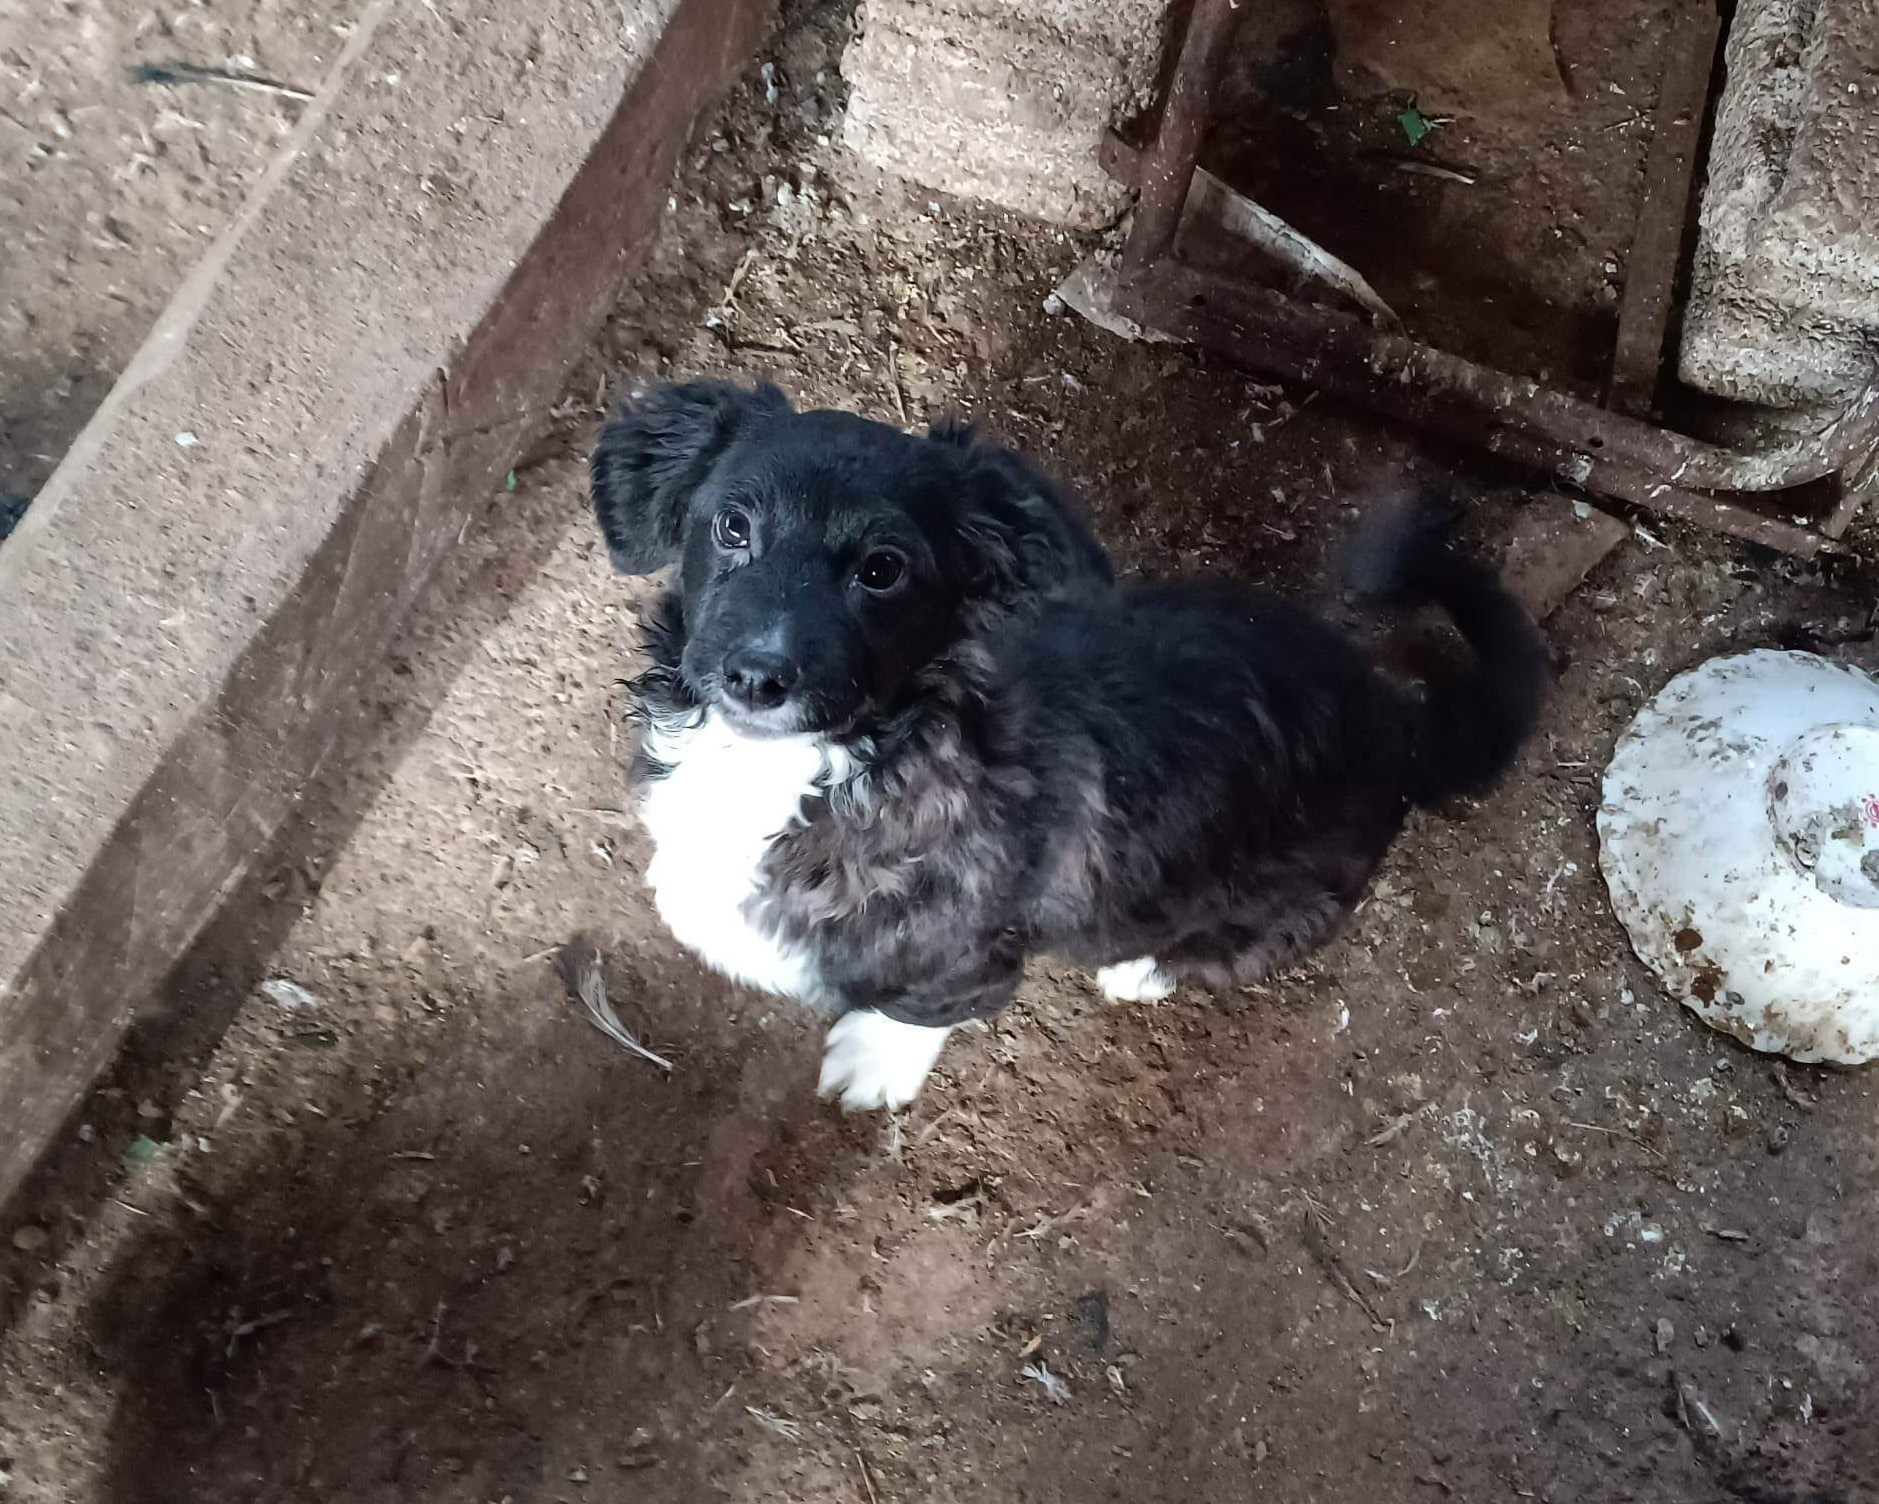 Tierschutzverein Bellas Pfotenhilfe Hunderettung Bosnien Hund adoptieren Leo